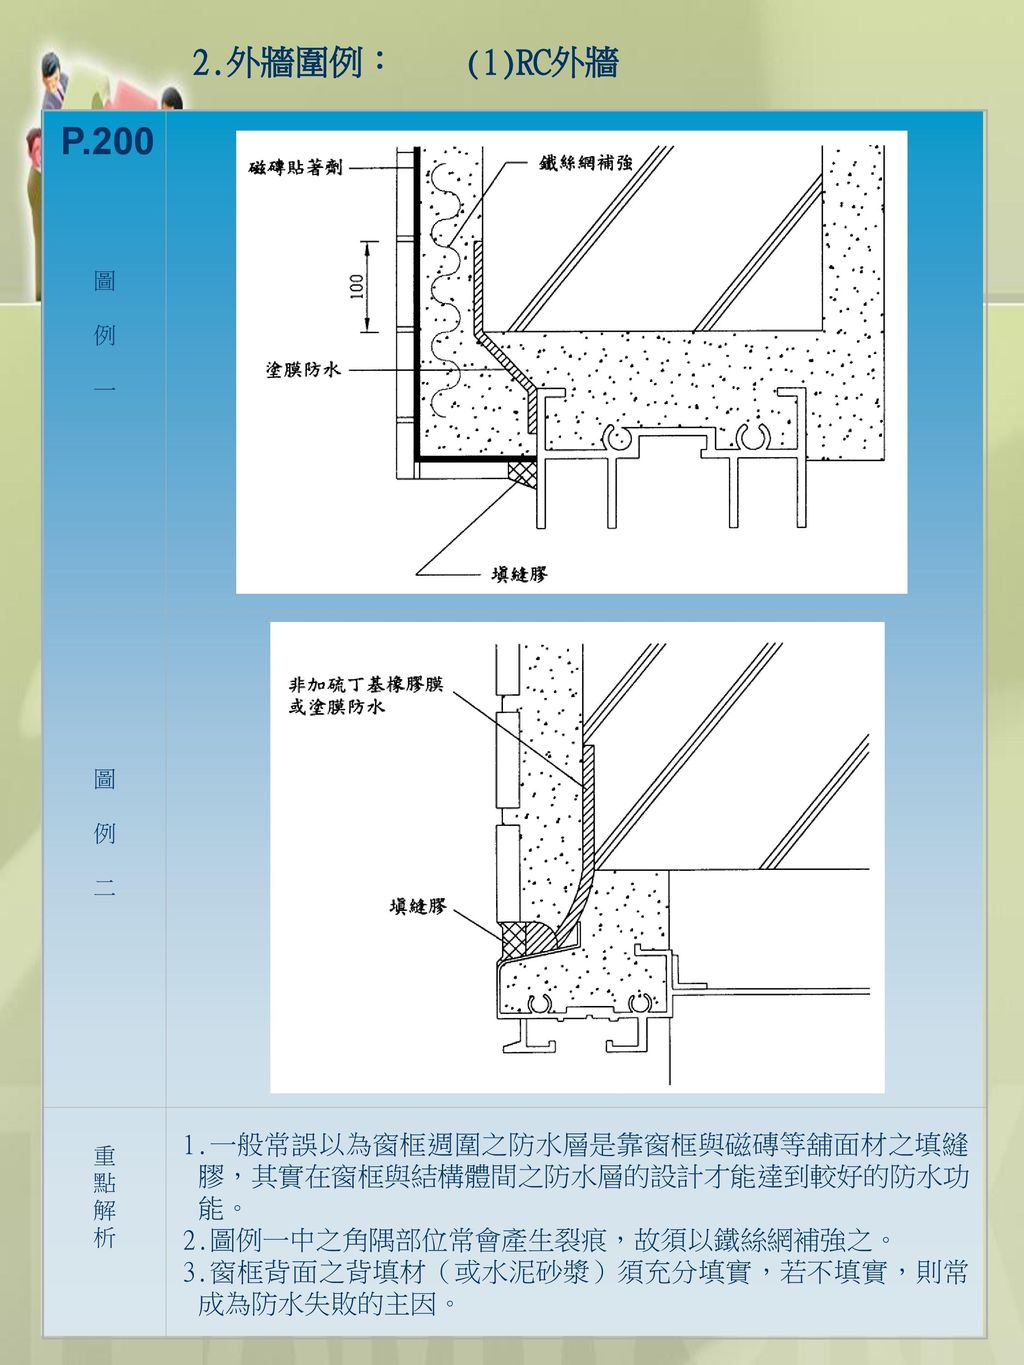 2.外牆圍例： (1)RC外牆 圖. 例. 一. 二. 重. 點. 解. 析. 1.一般常誤以為窗框週圍之防水層是靠窗框與磁磚等舖面材之填縫膠，其實在窗框與結構體間之防水層的設計才能達到較好的防水功能。